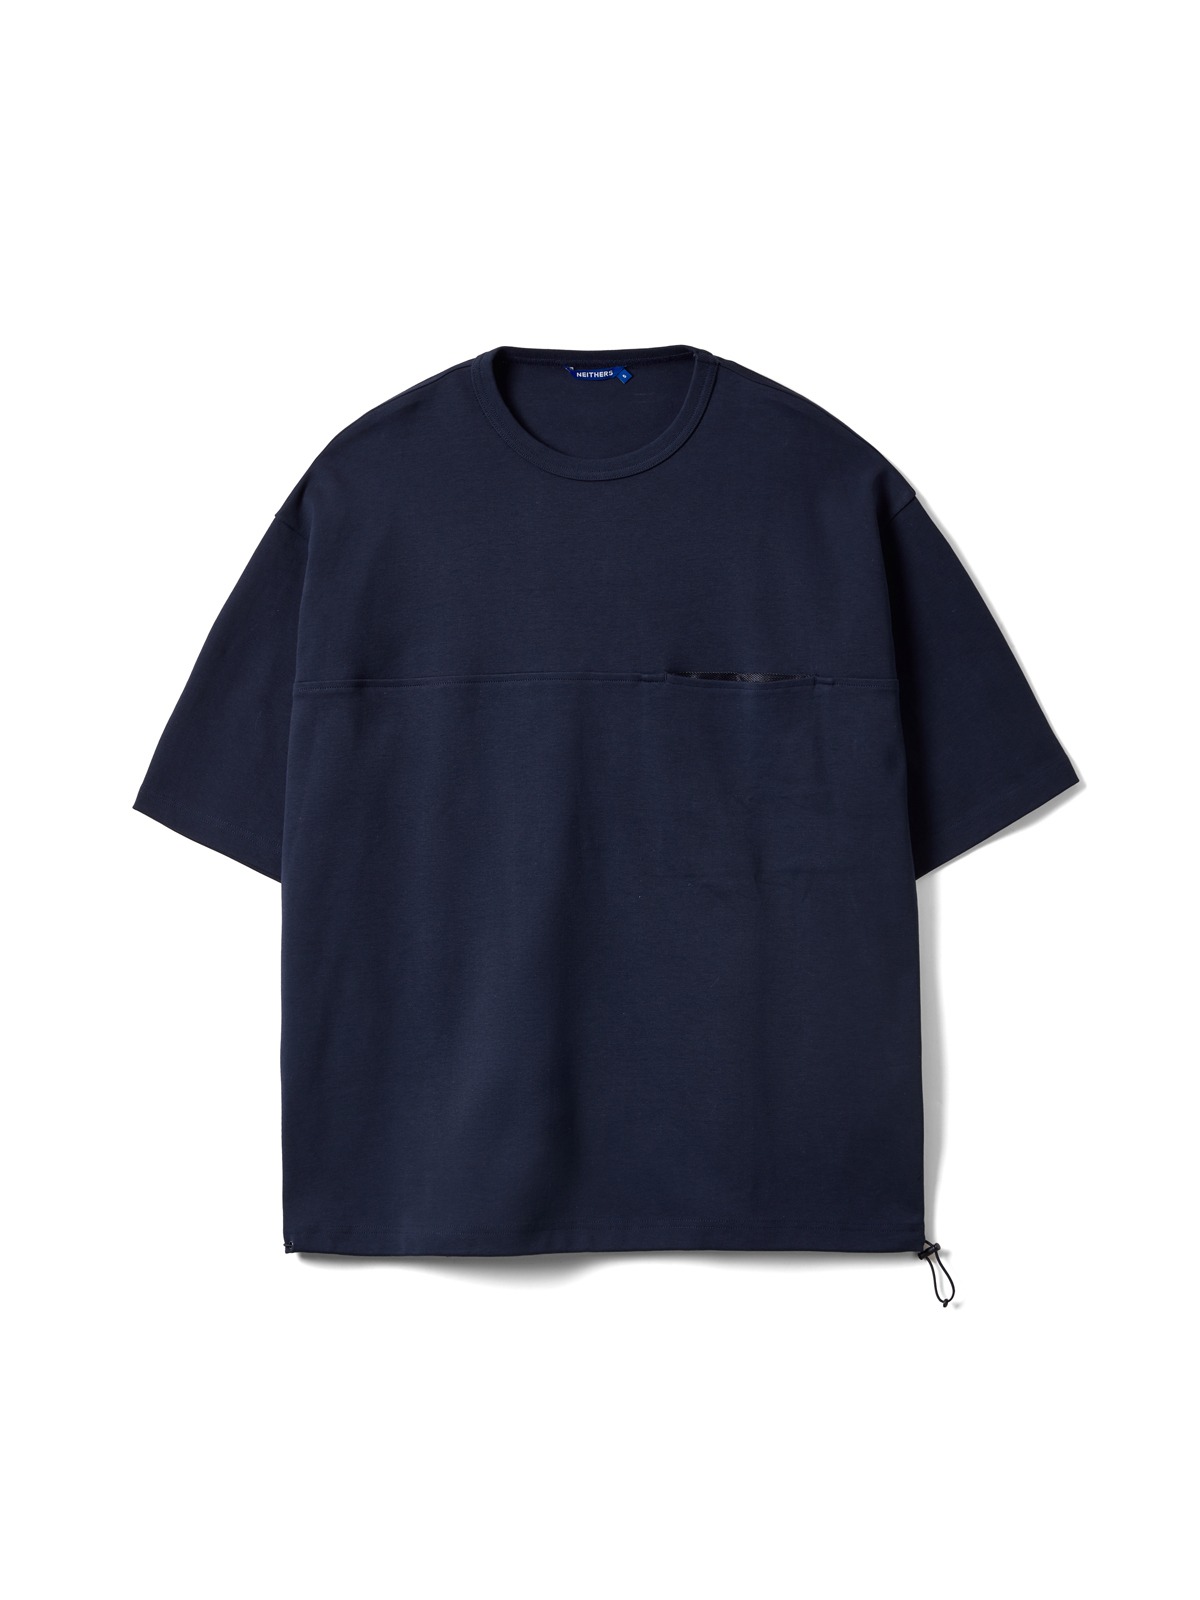 Camper S/S T-Shirt (Dark Navy)